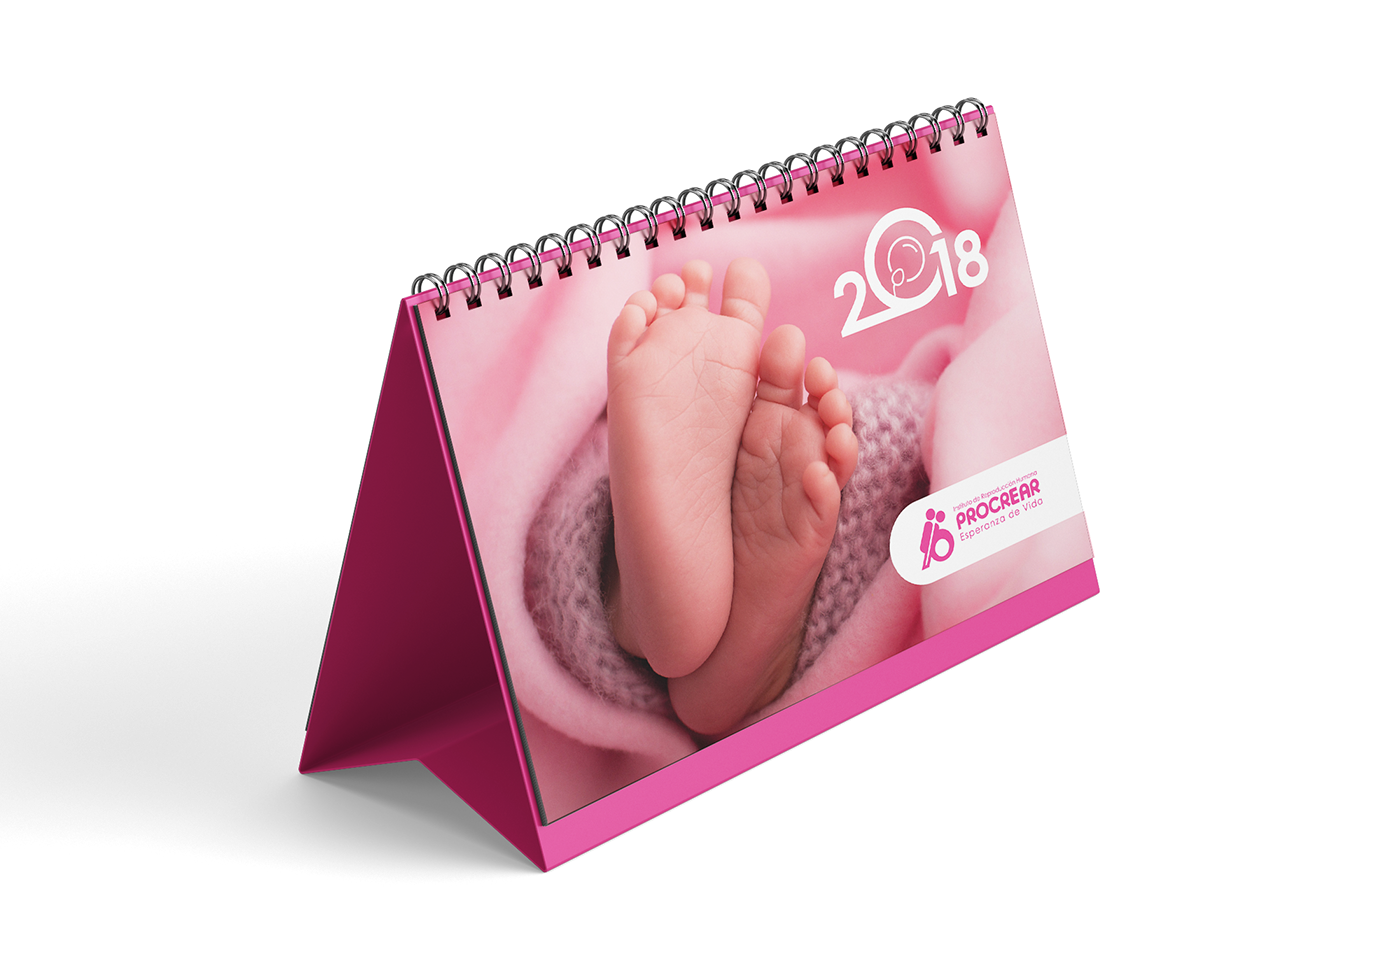 PROCREAR calendario Hablador brochure johanna cure Reproducción fertilidad